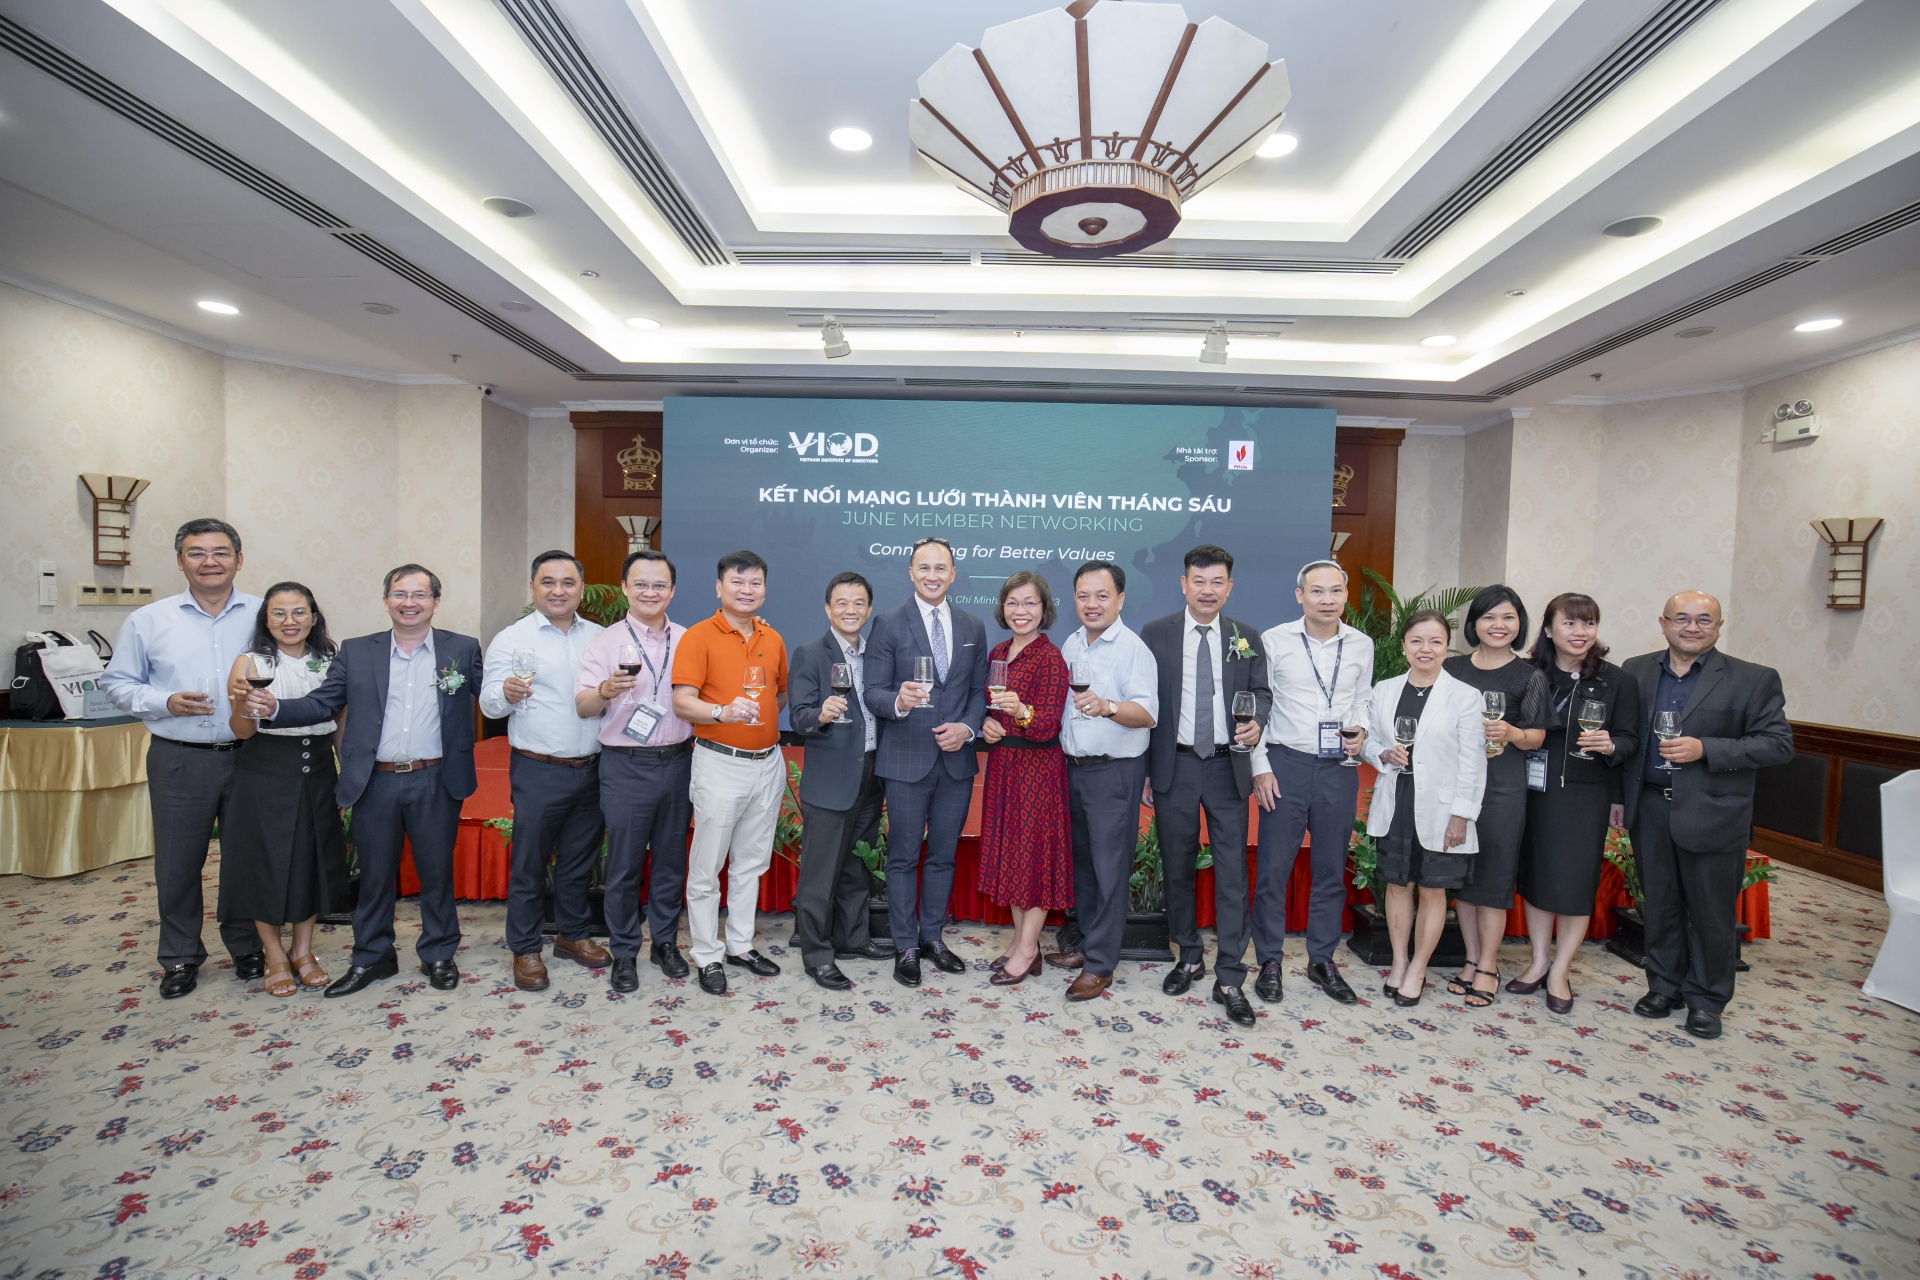 VIOD launches ESG integration course